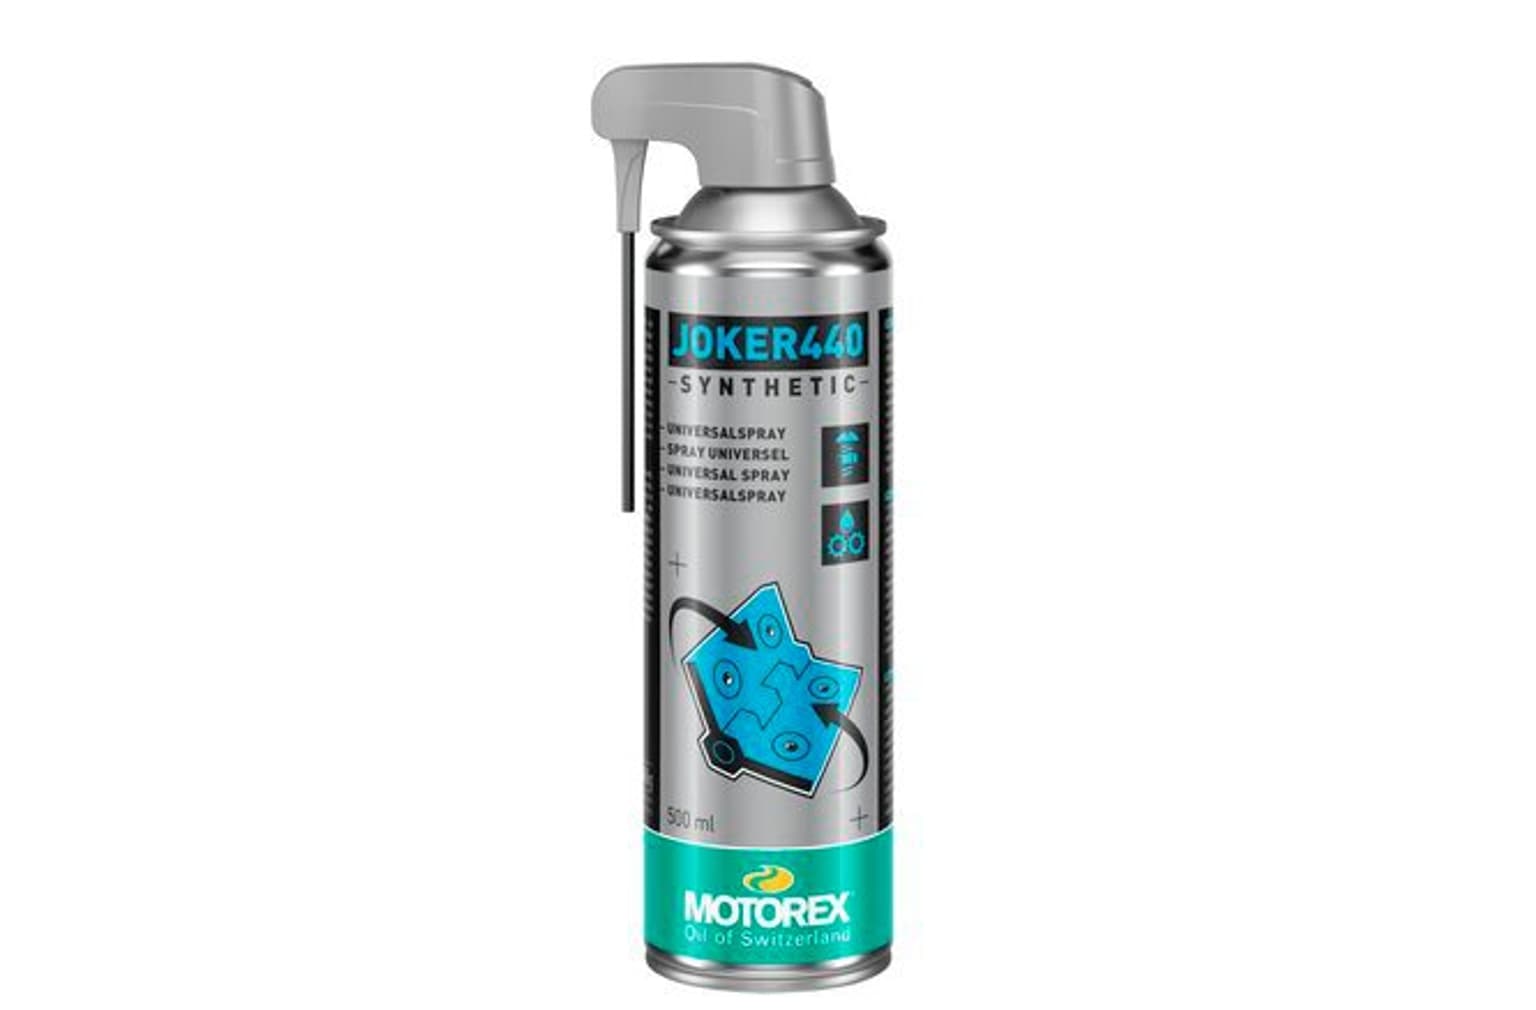 MOTOREX MOTOREX Lubrificante spray Joker 440 da 500 ml Lubrificanti 1